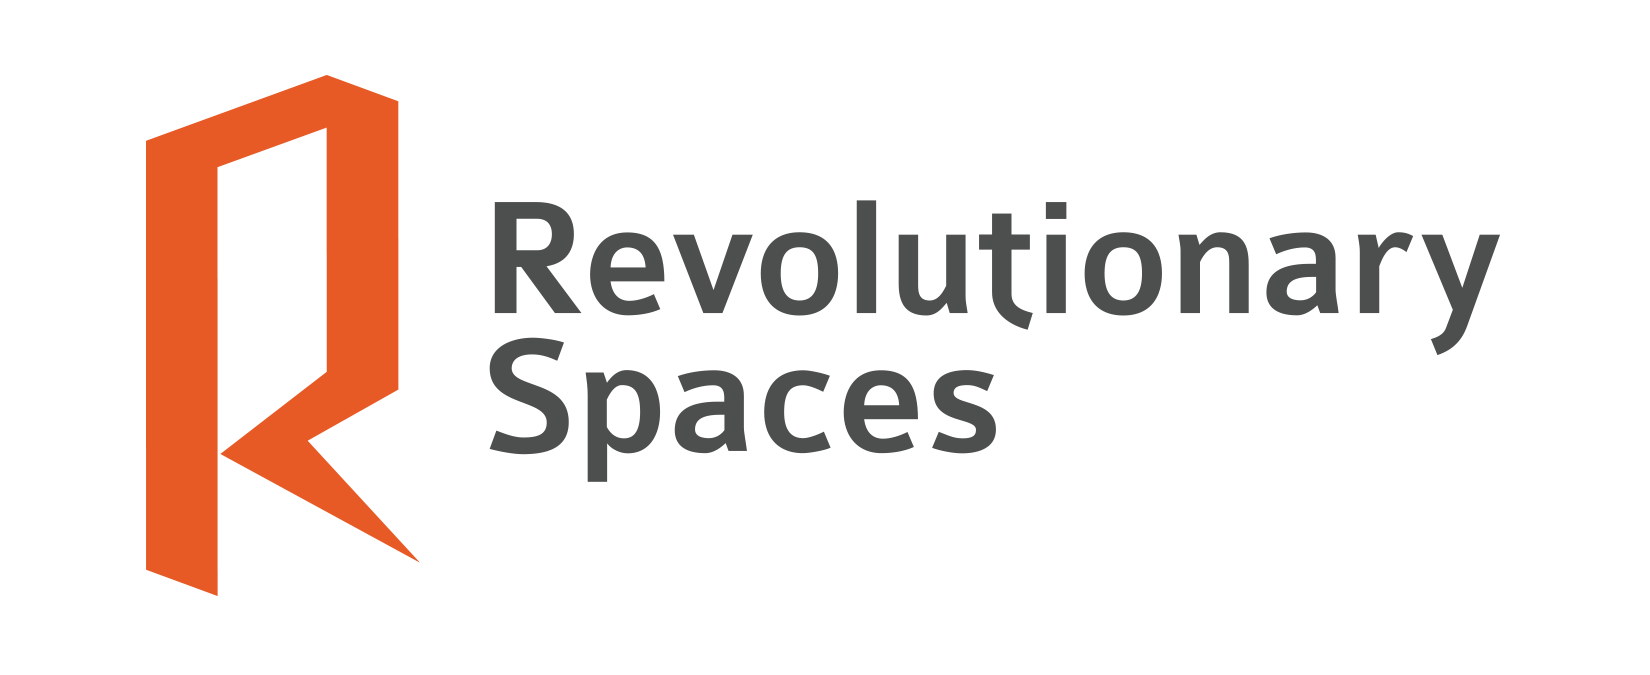 Image: Revolutionary Spaces Logo